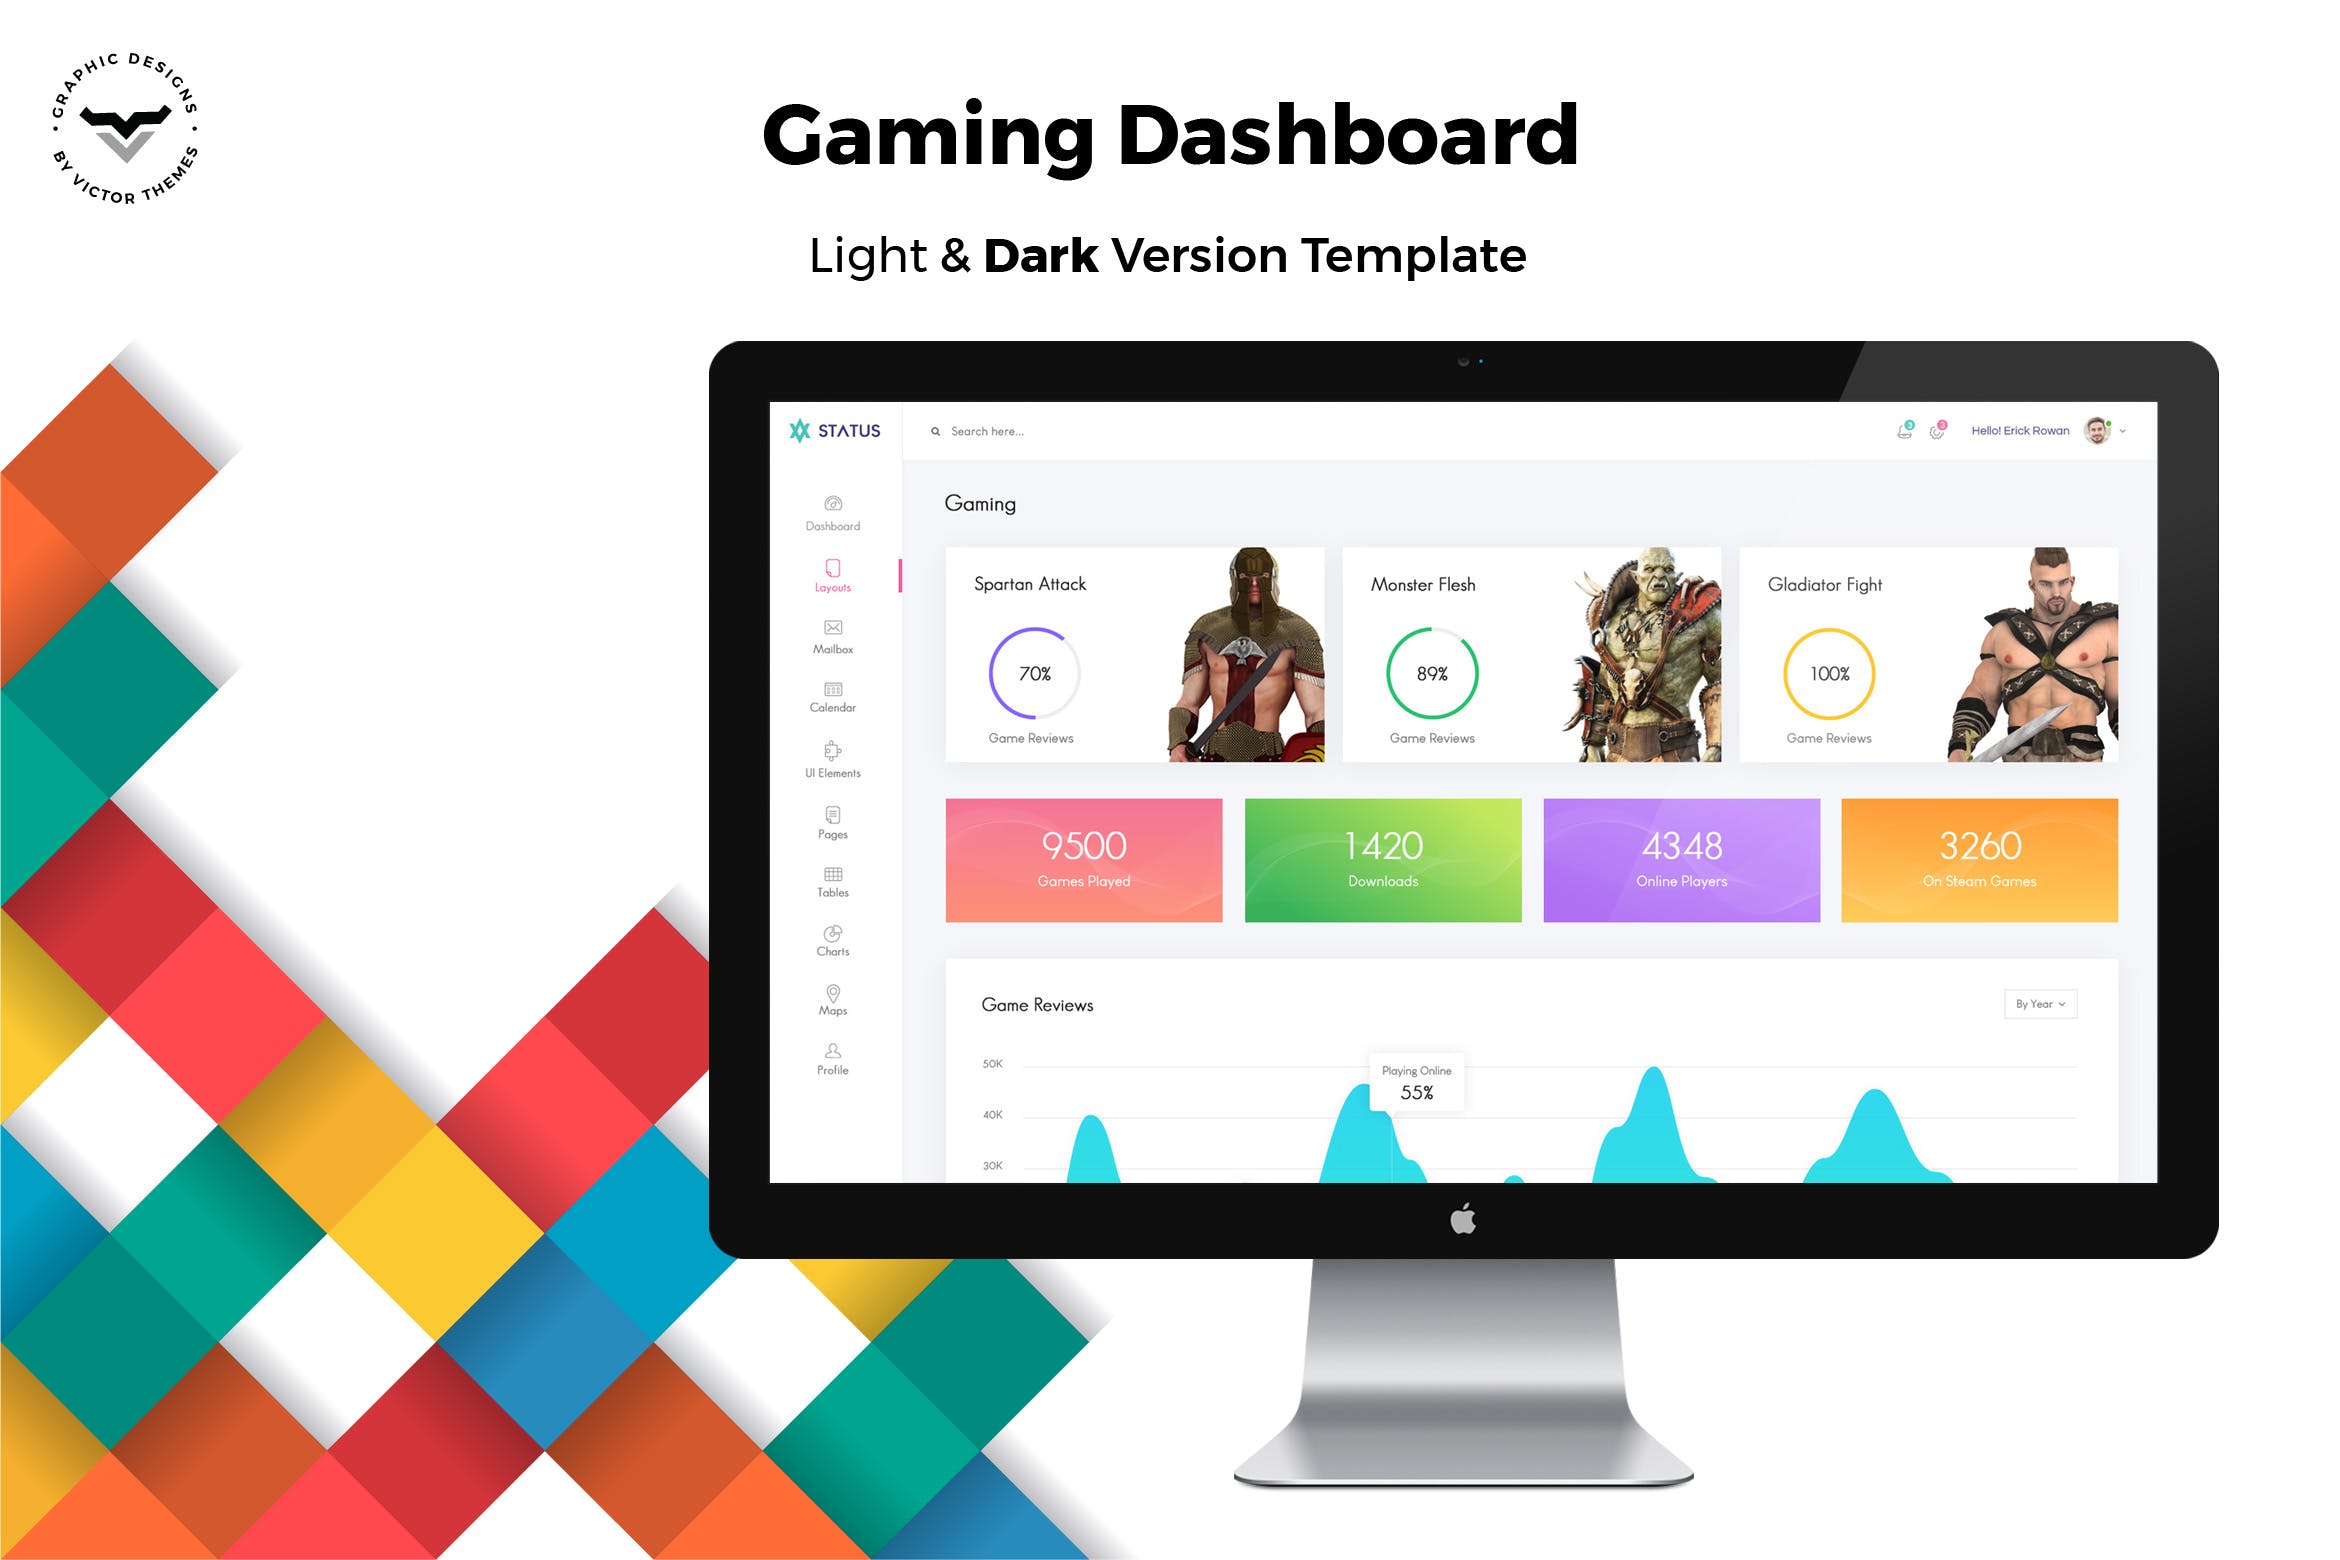 游戏网站平台后台管理界面UI设计第一素材精选模板 Gaming Admin Dashboard UI Kit插图